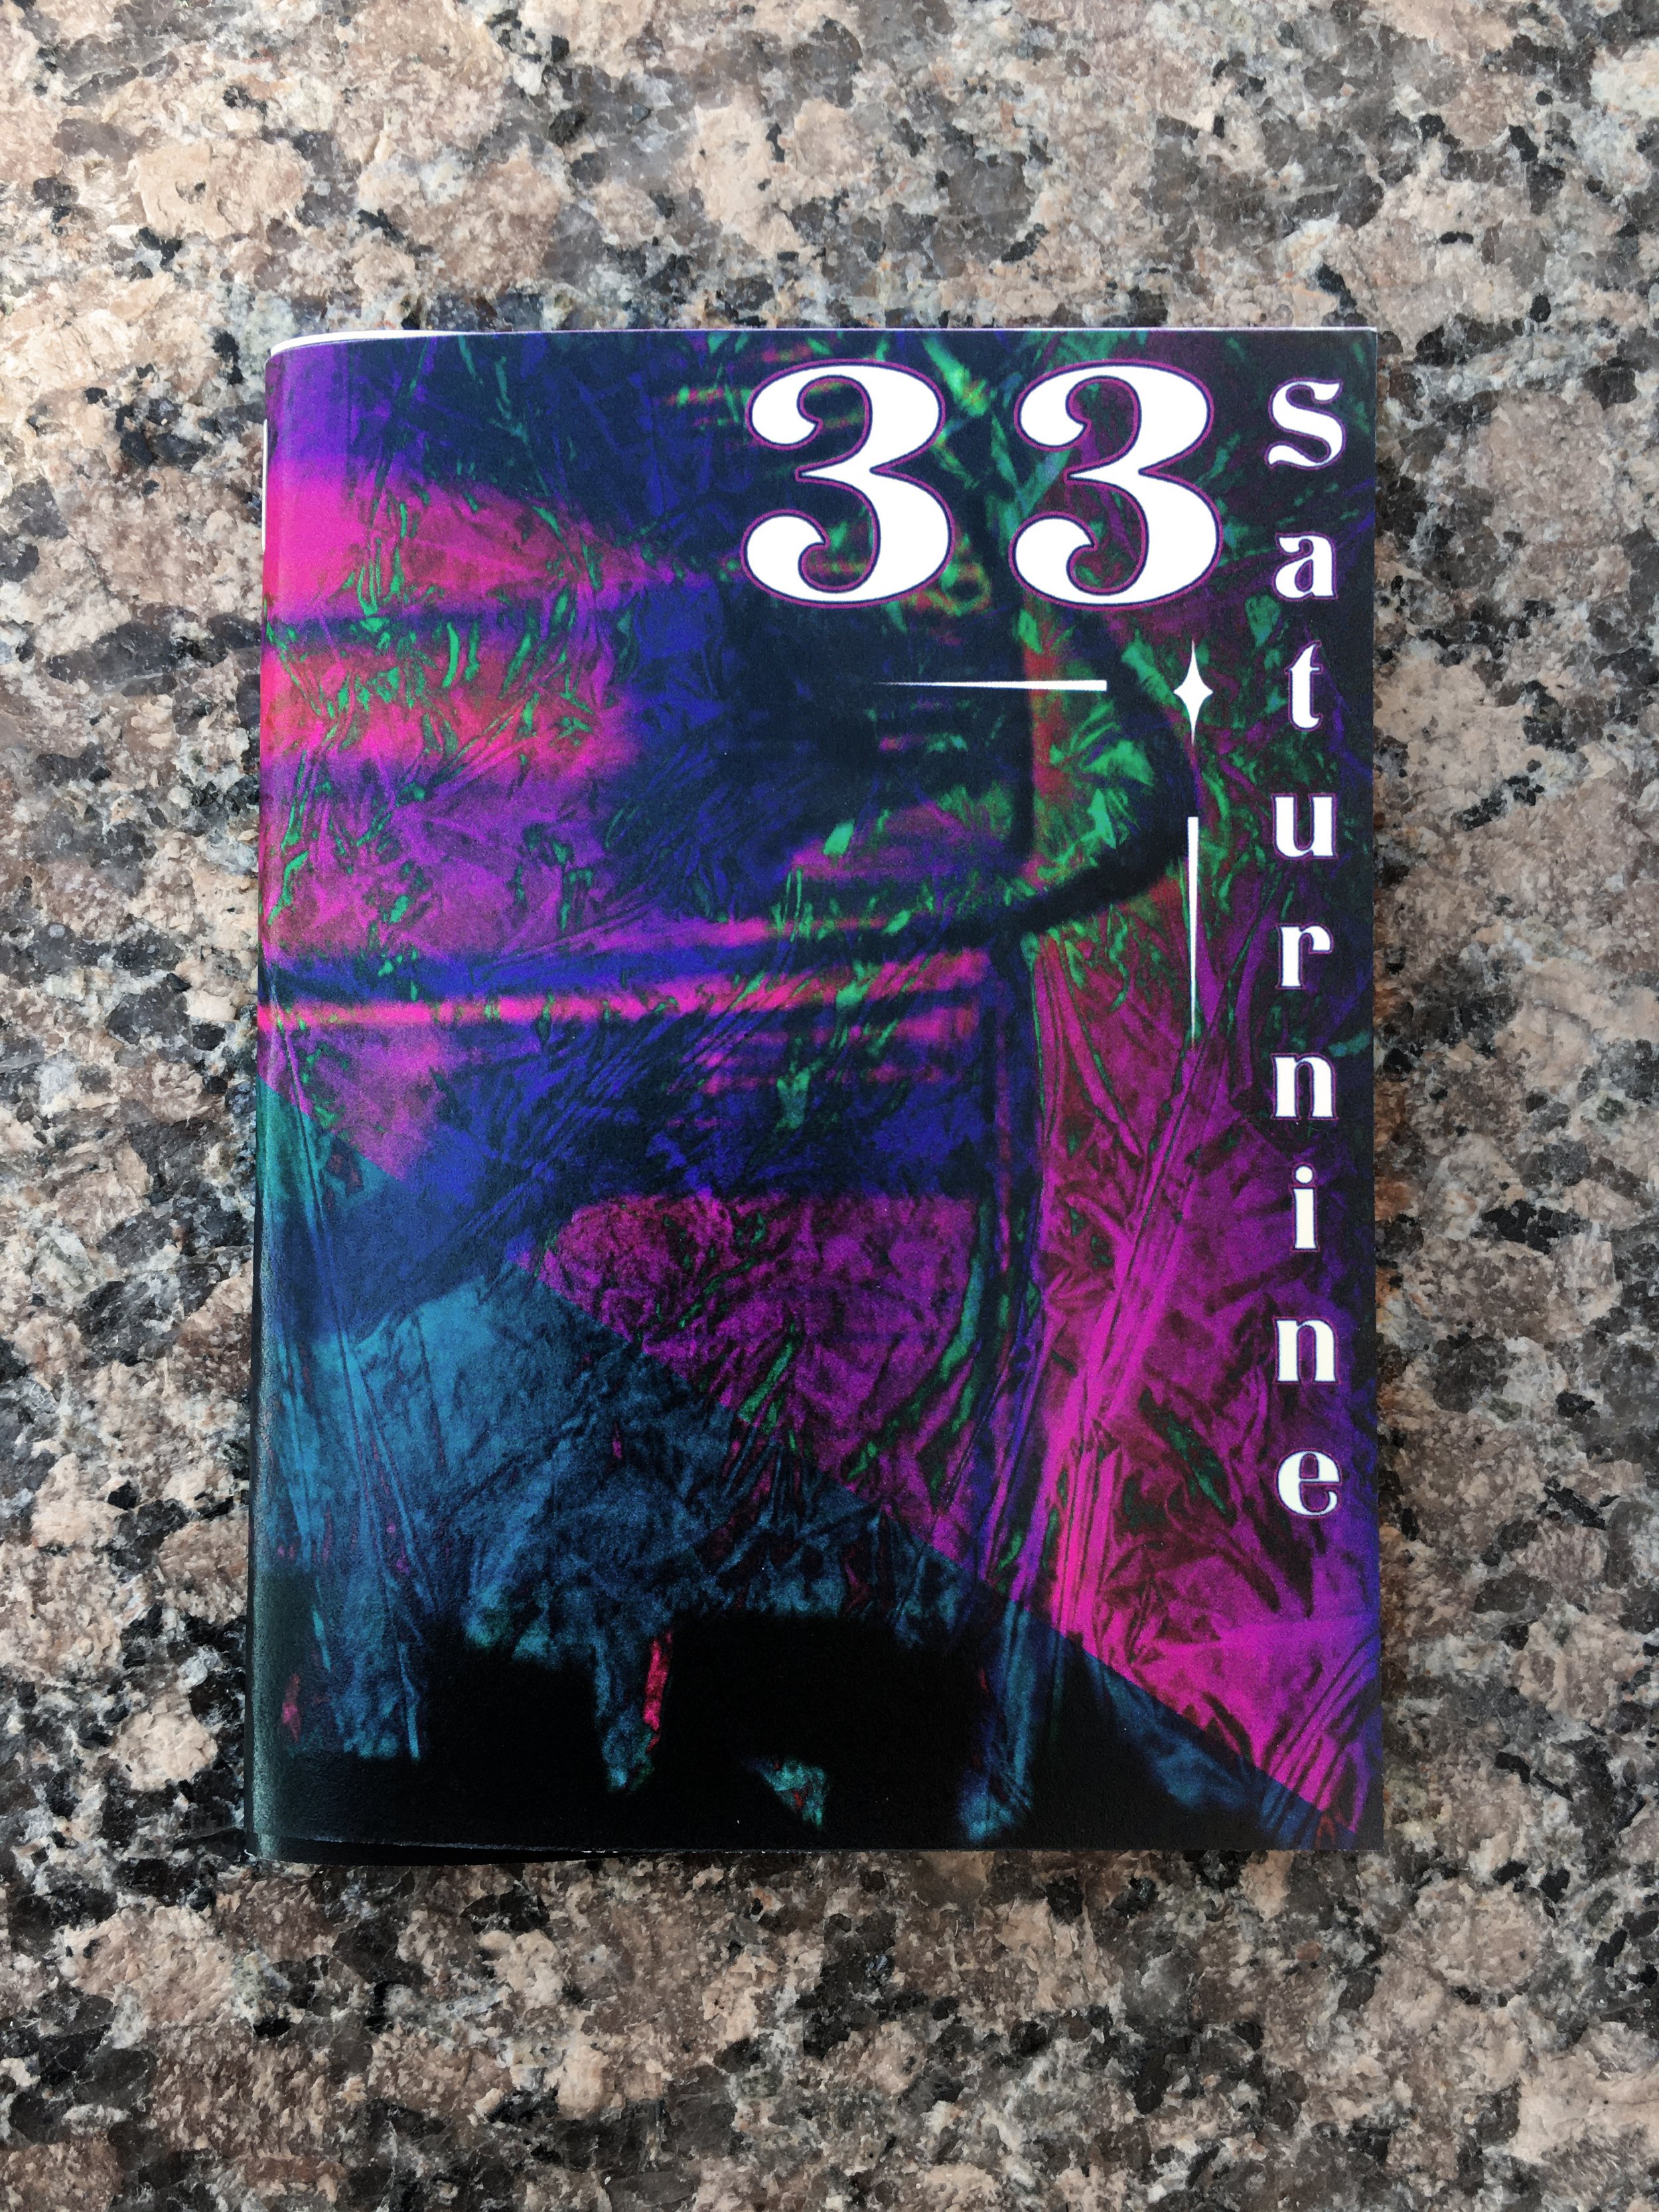 33 Saturnine (cover)